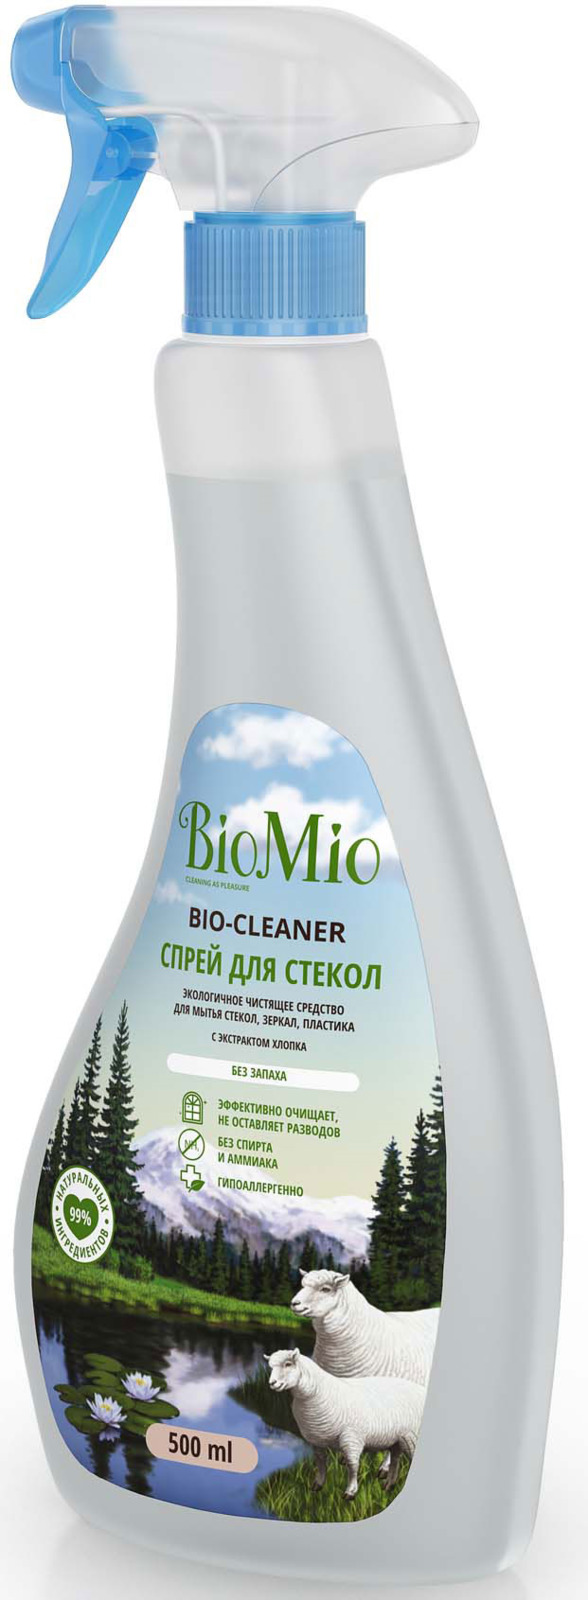 фото Средство для чистки стекла BioMio, 500 мл